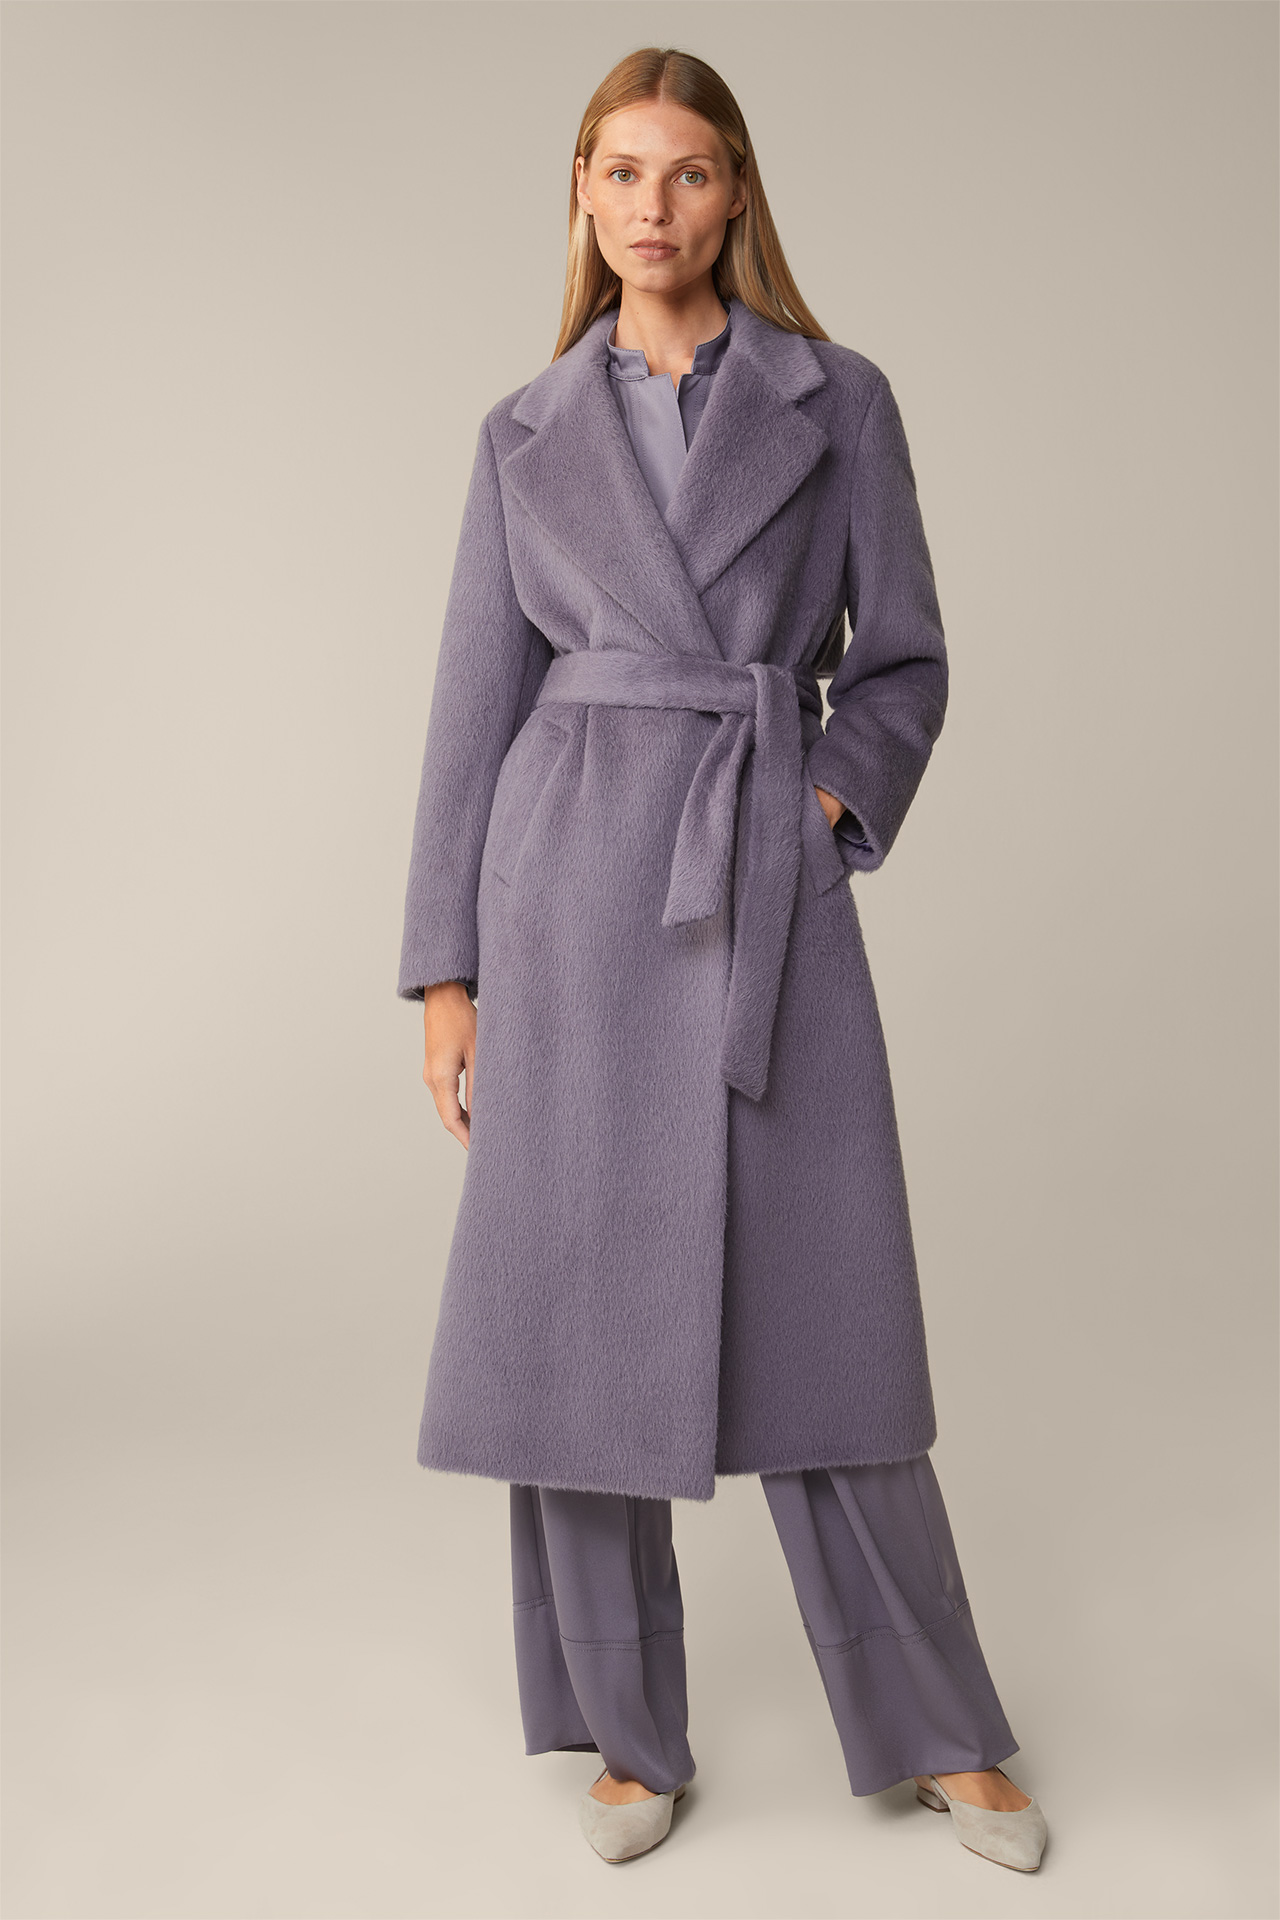 Manteau en alpaga et laine vierge, en mauve-violet